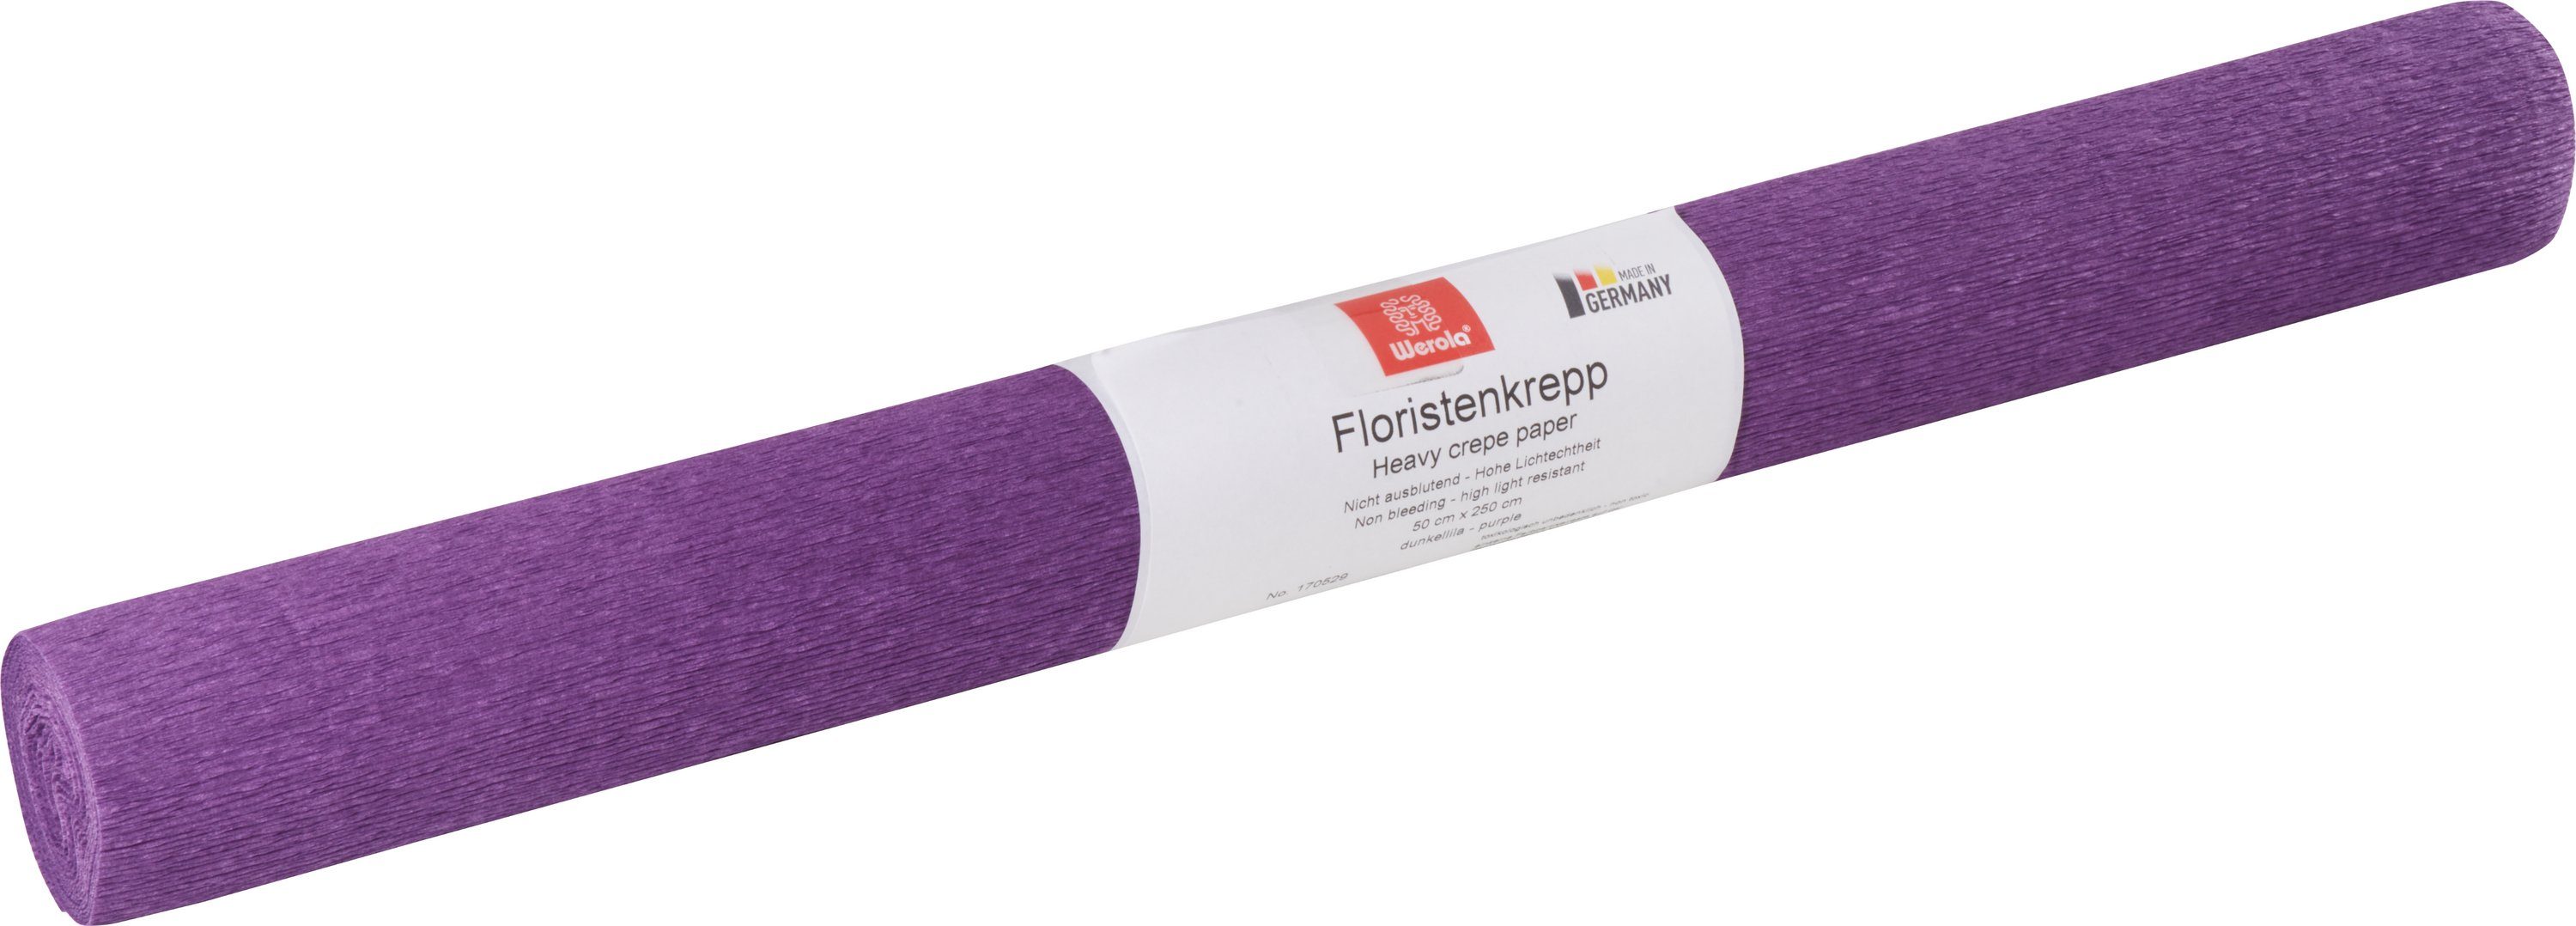 Werola Feinpapier Floristen-Kreppapier, 250 cm x 50 cm, farbfest Dunkellila